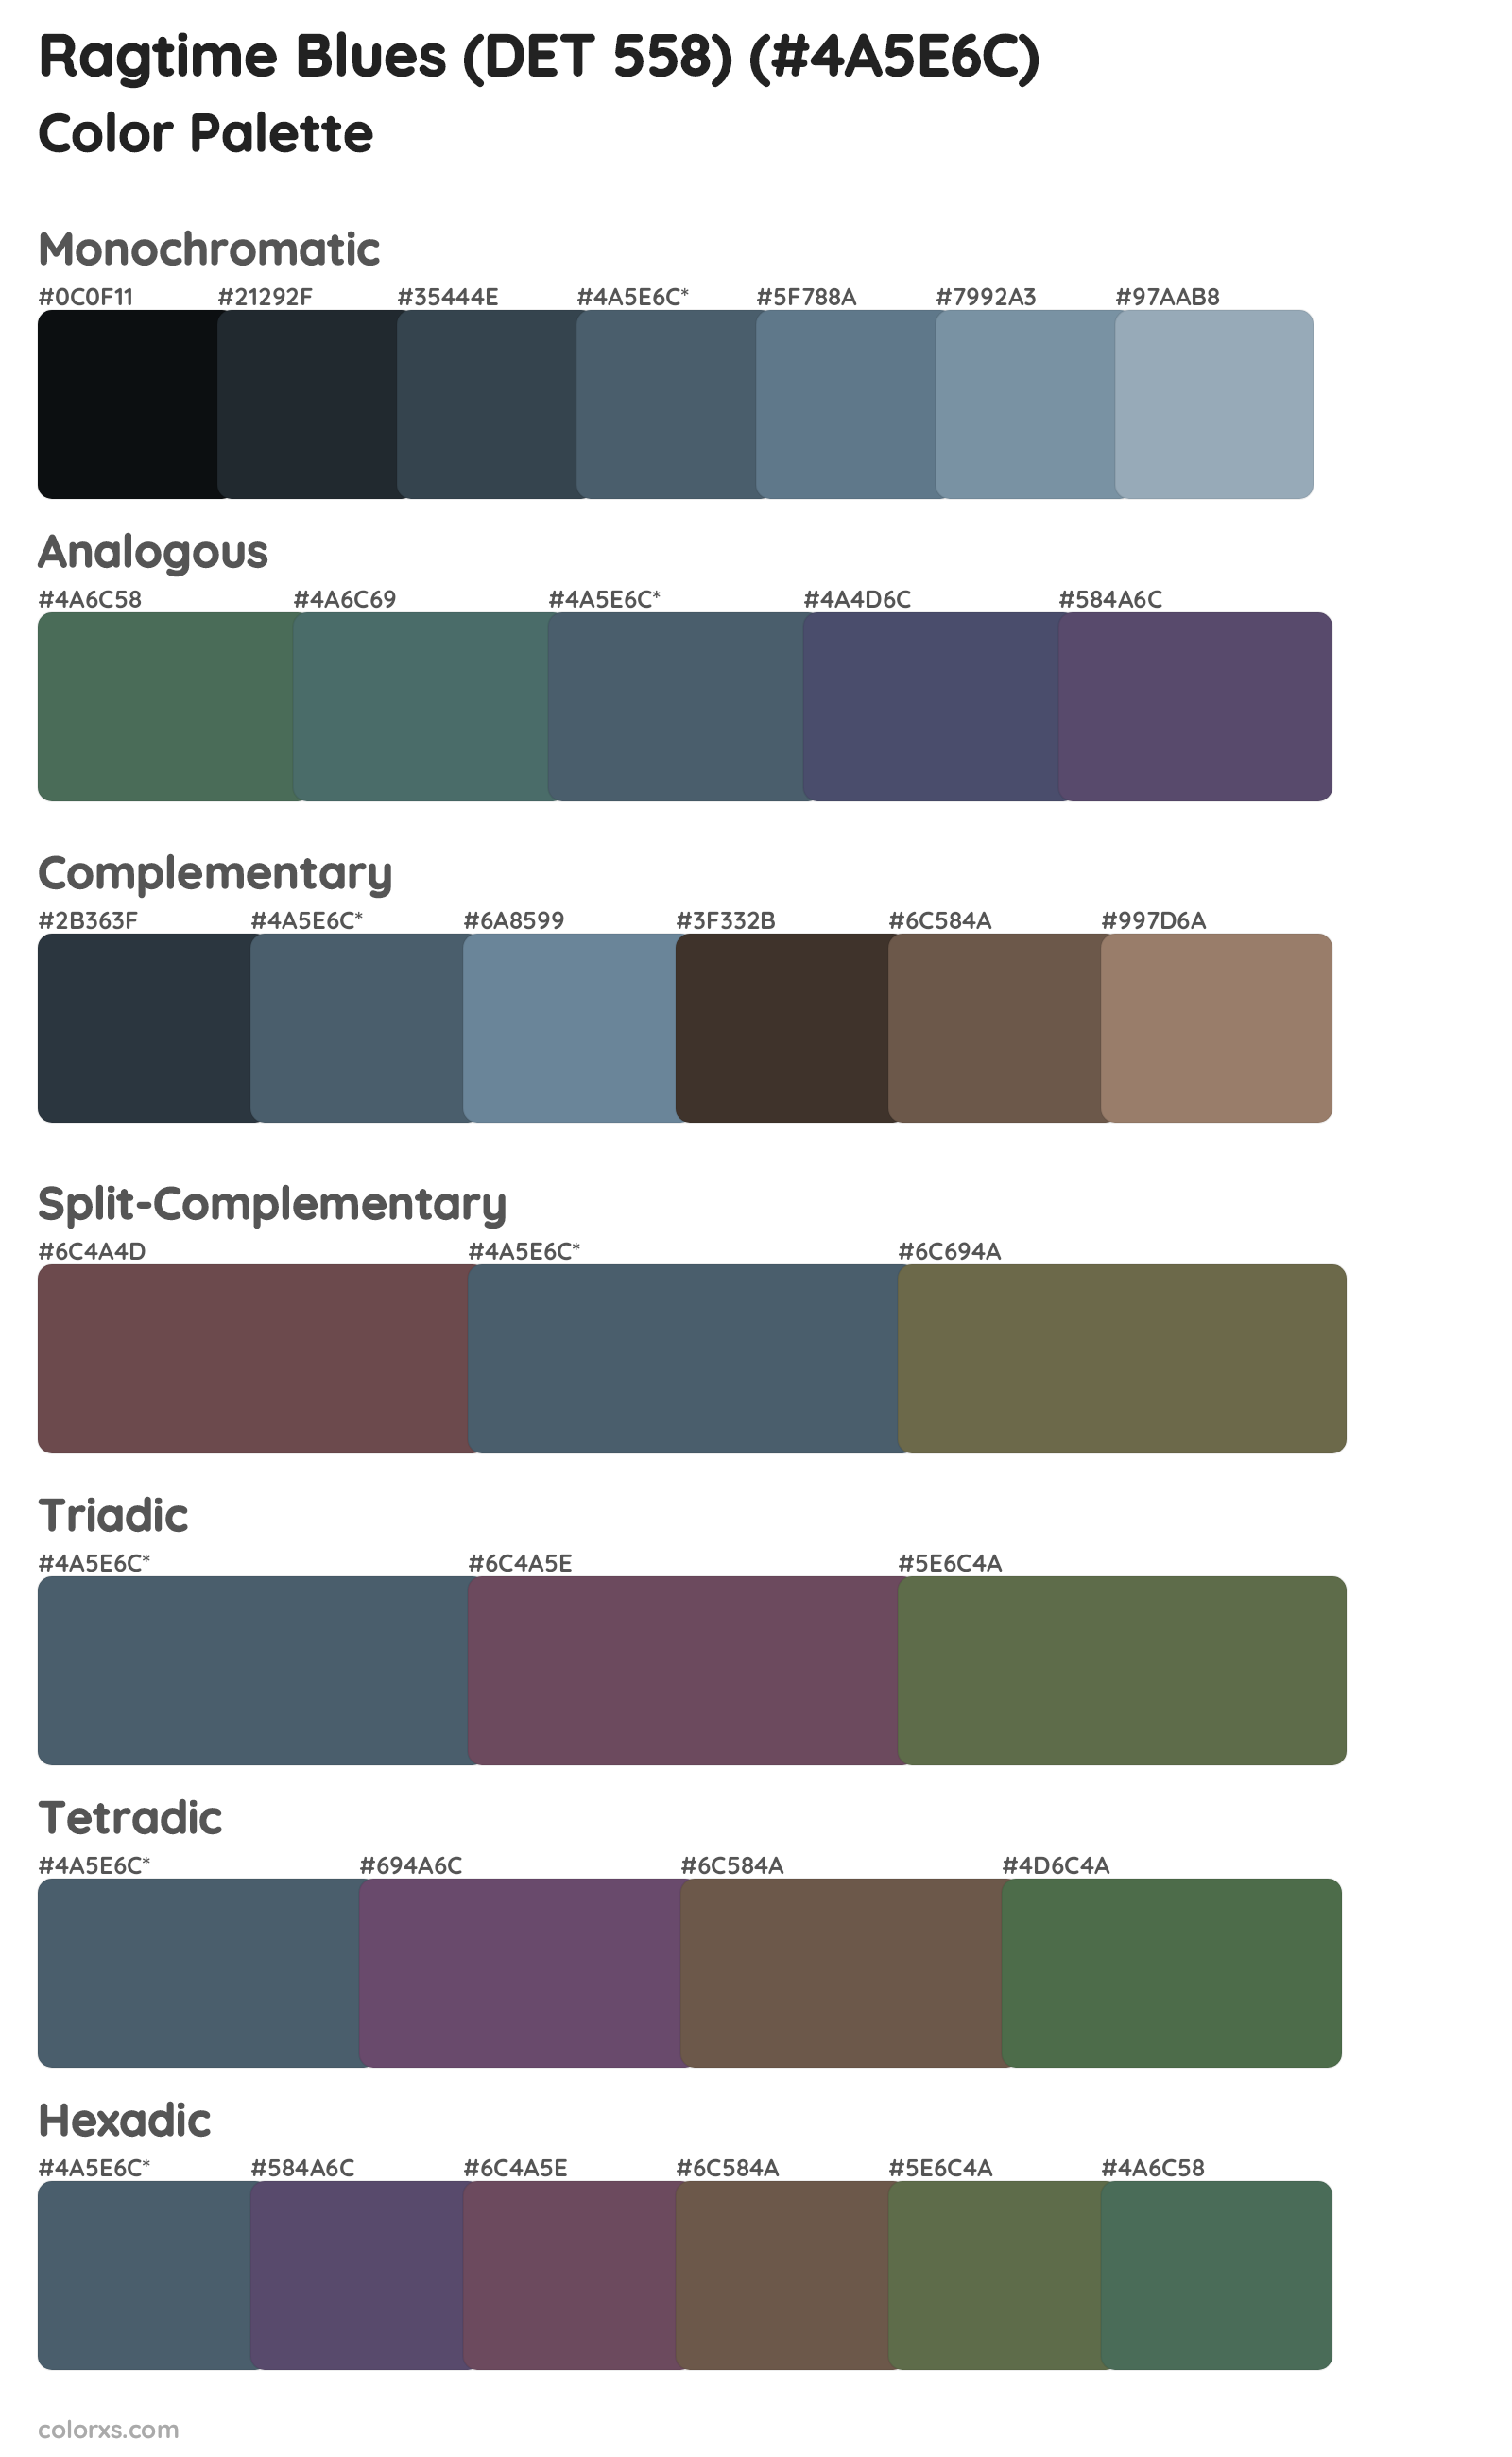 Ragtime Blues (DET 558) Color Scheme Palettes